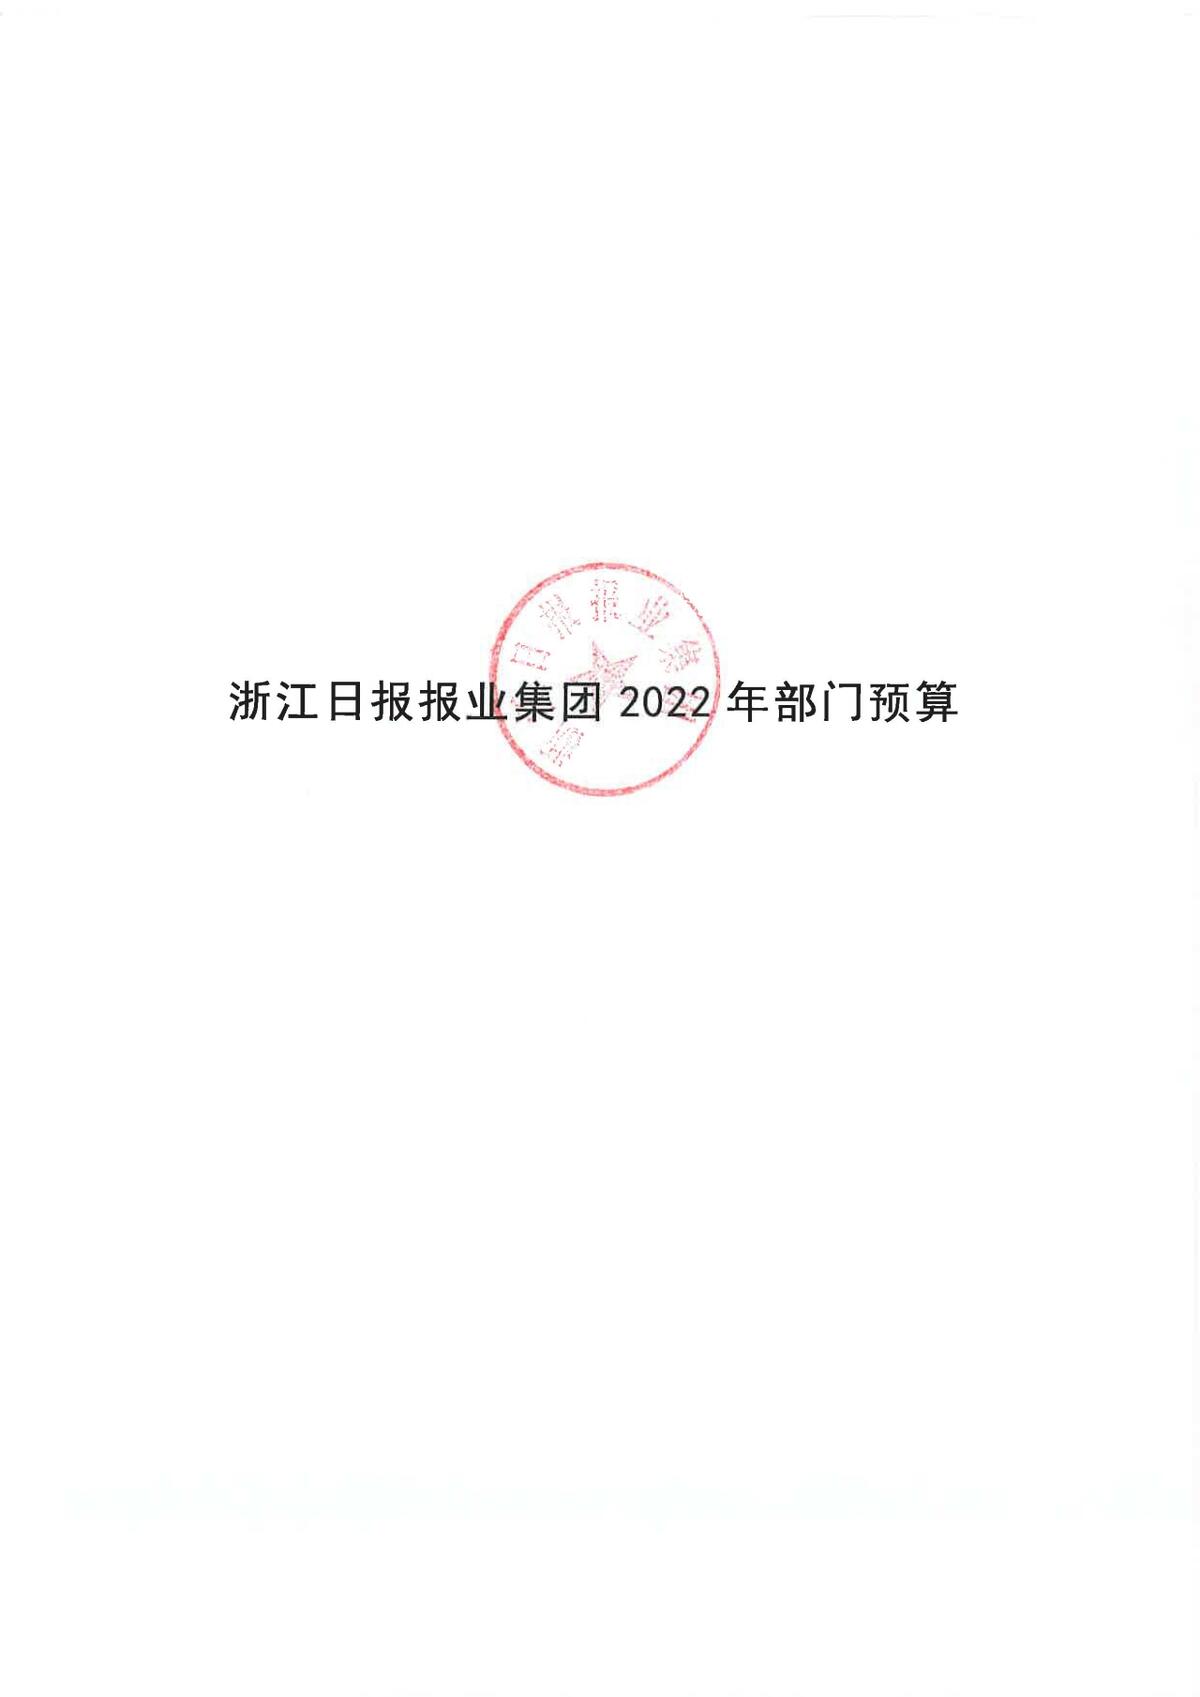 浙江日报报业集团2022年部门预算公开_页面_01.jpg